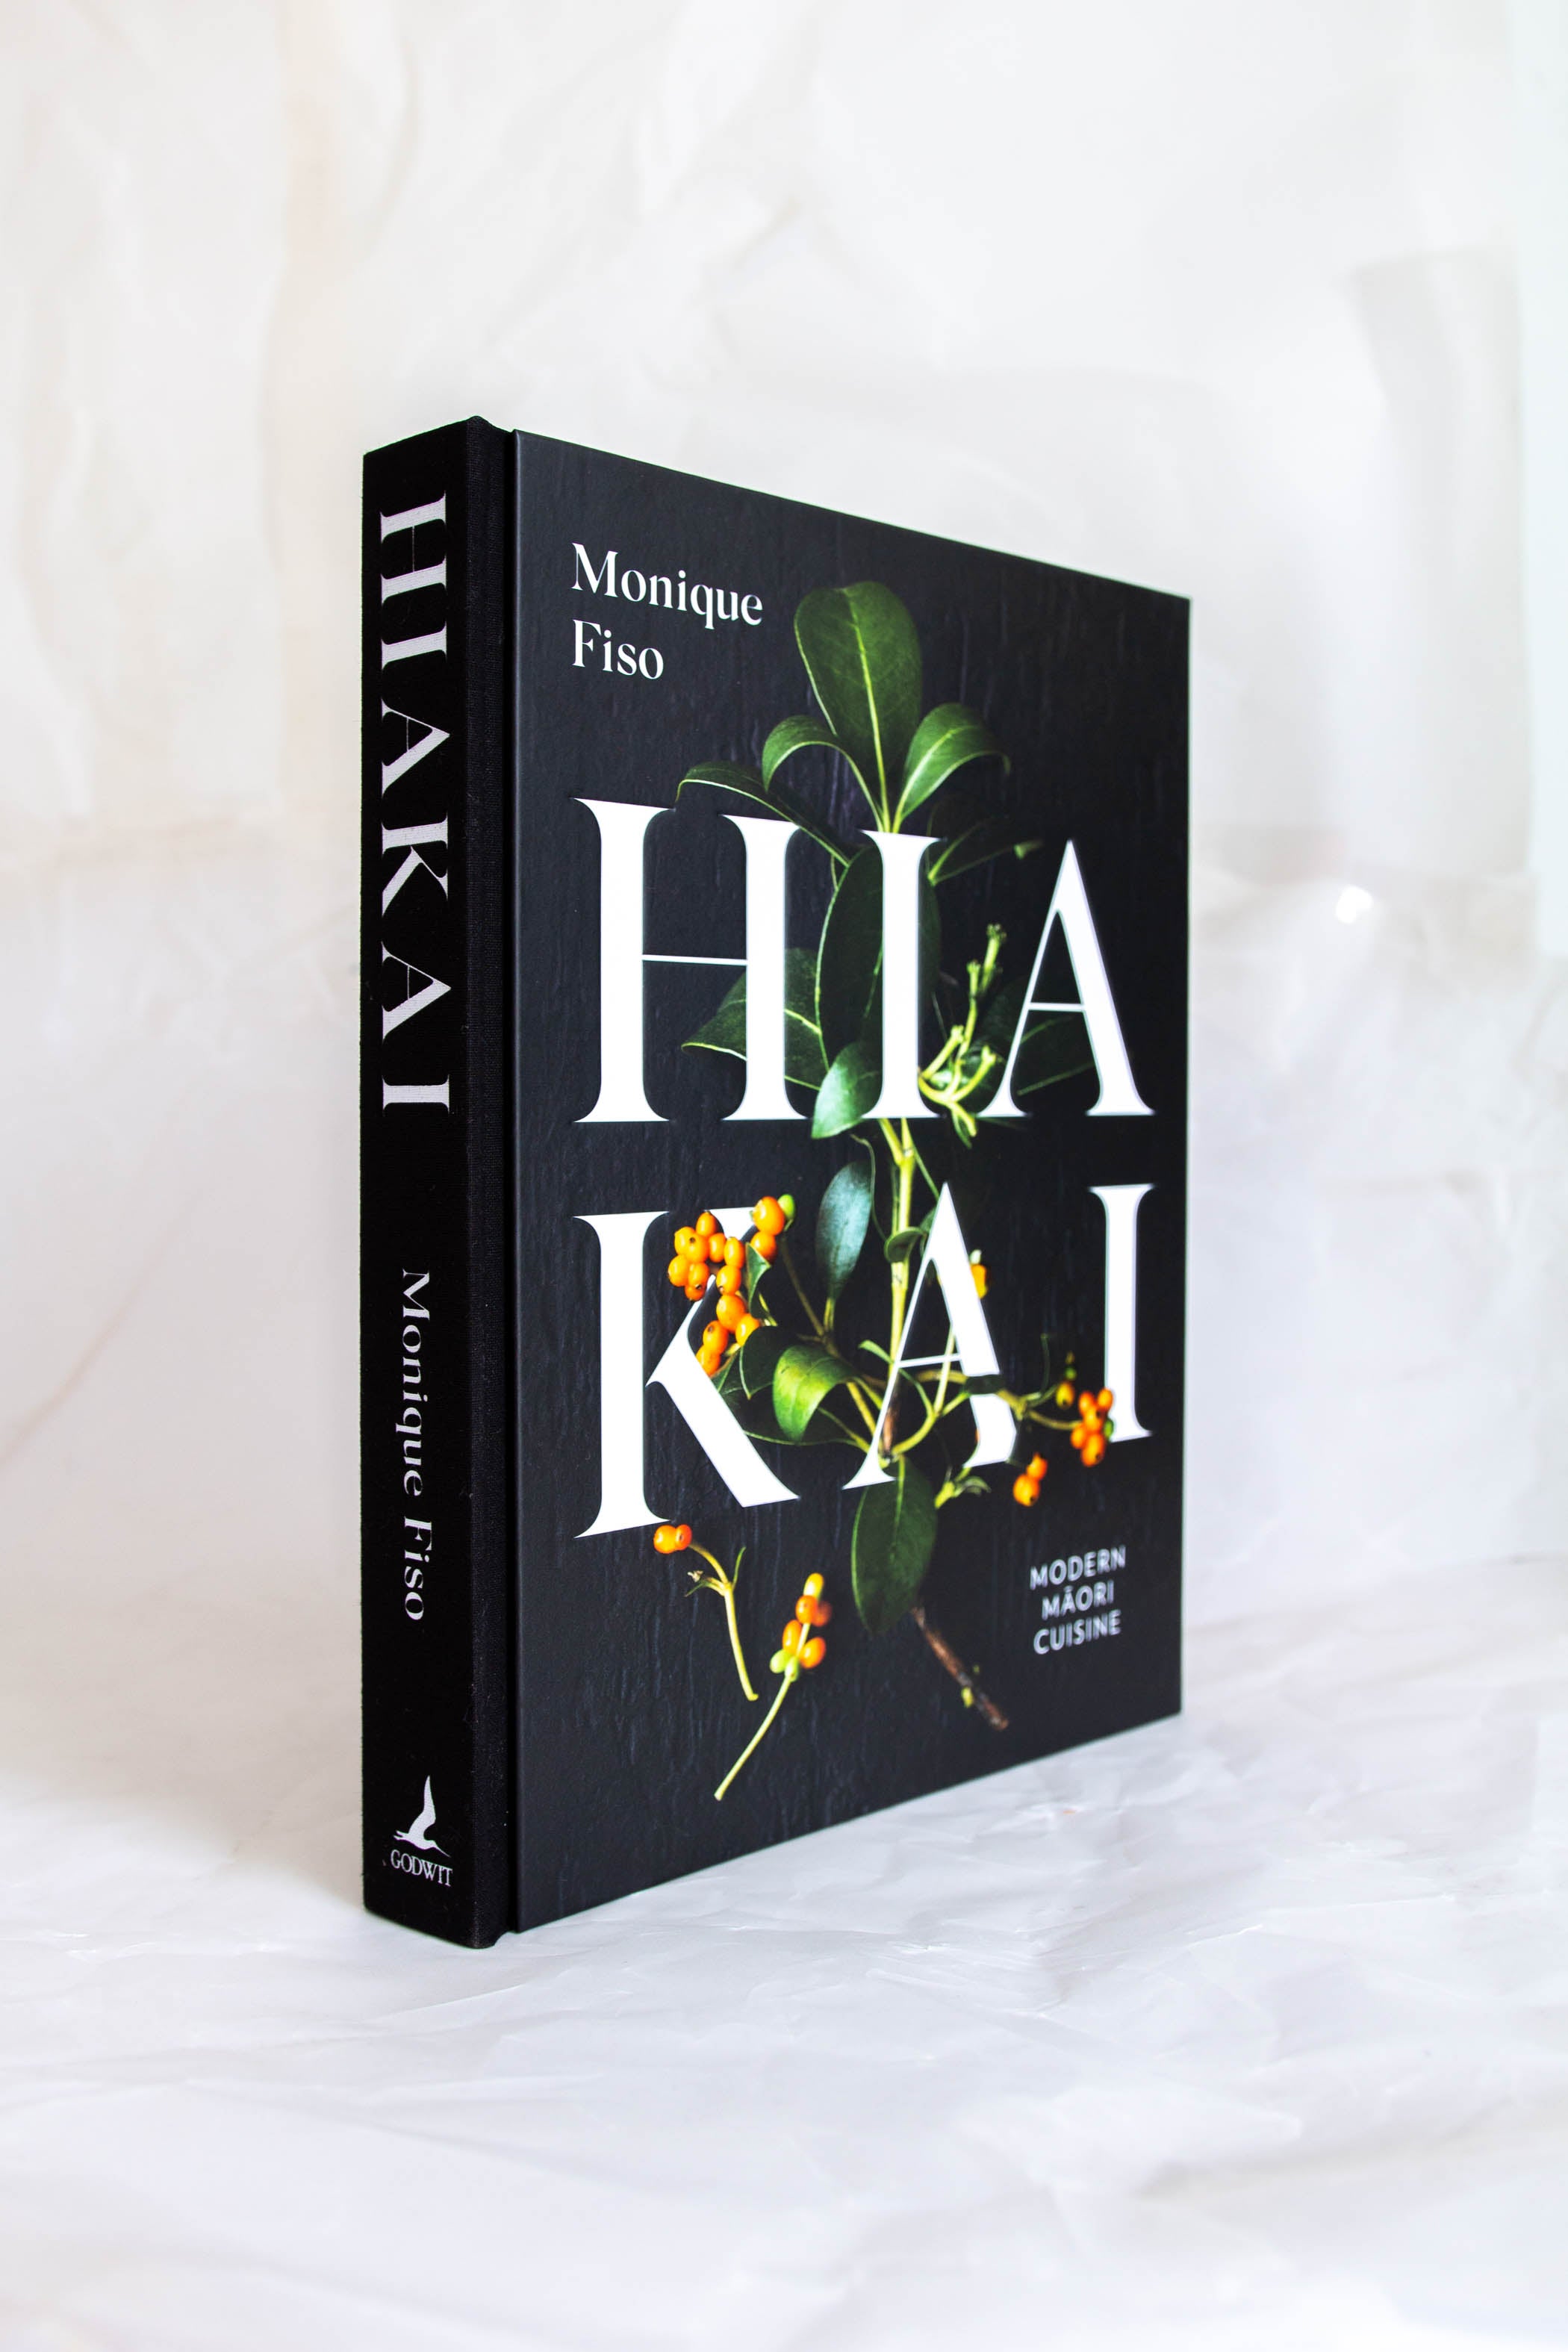 HiaKai; Modern Māori Cuisine by Monique Fiso